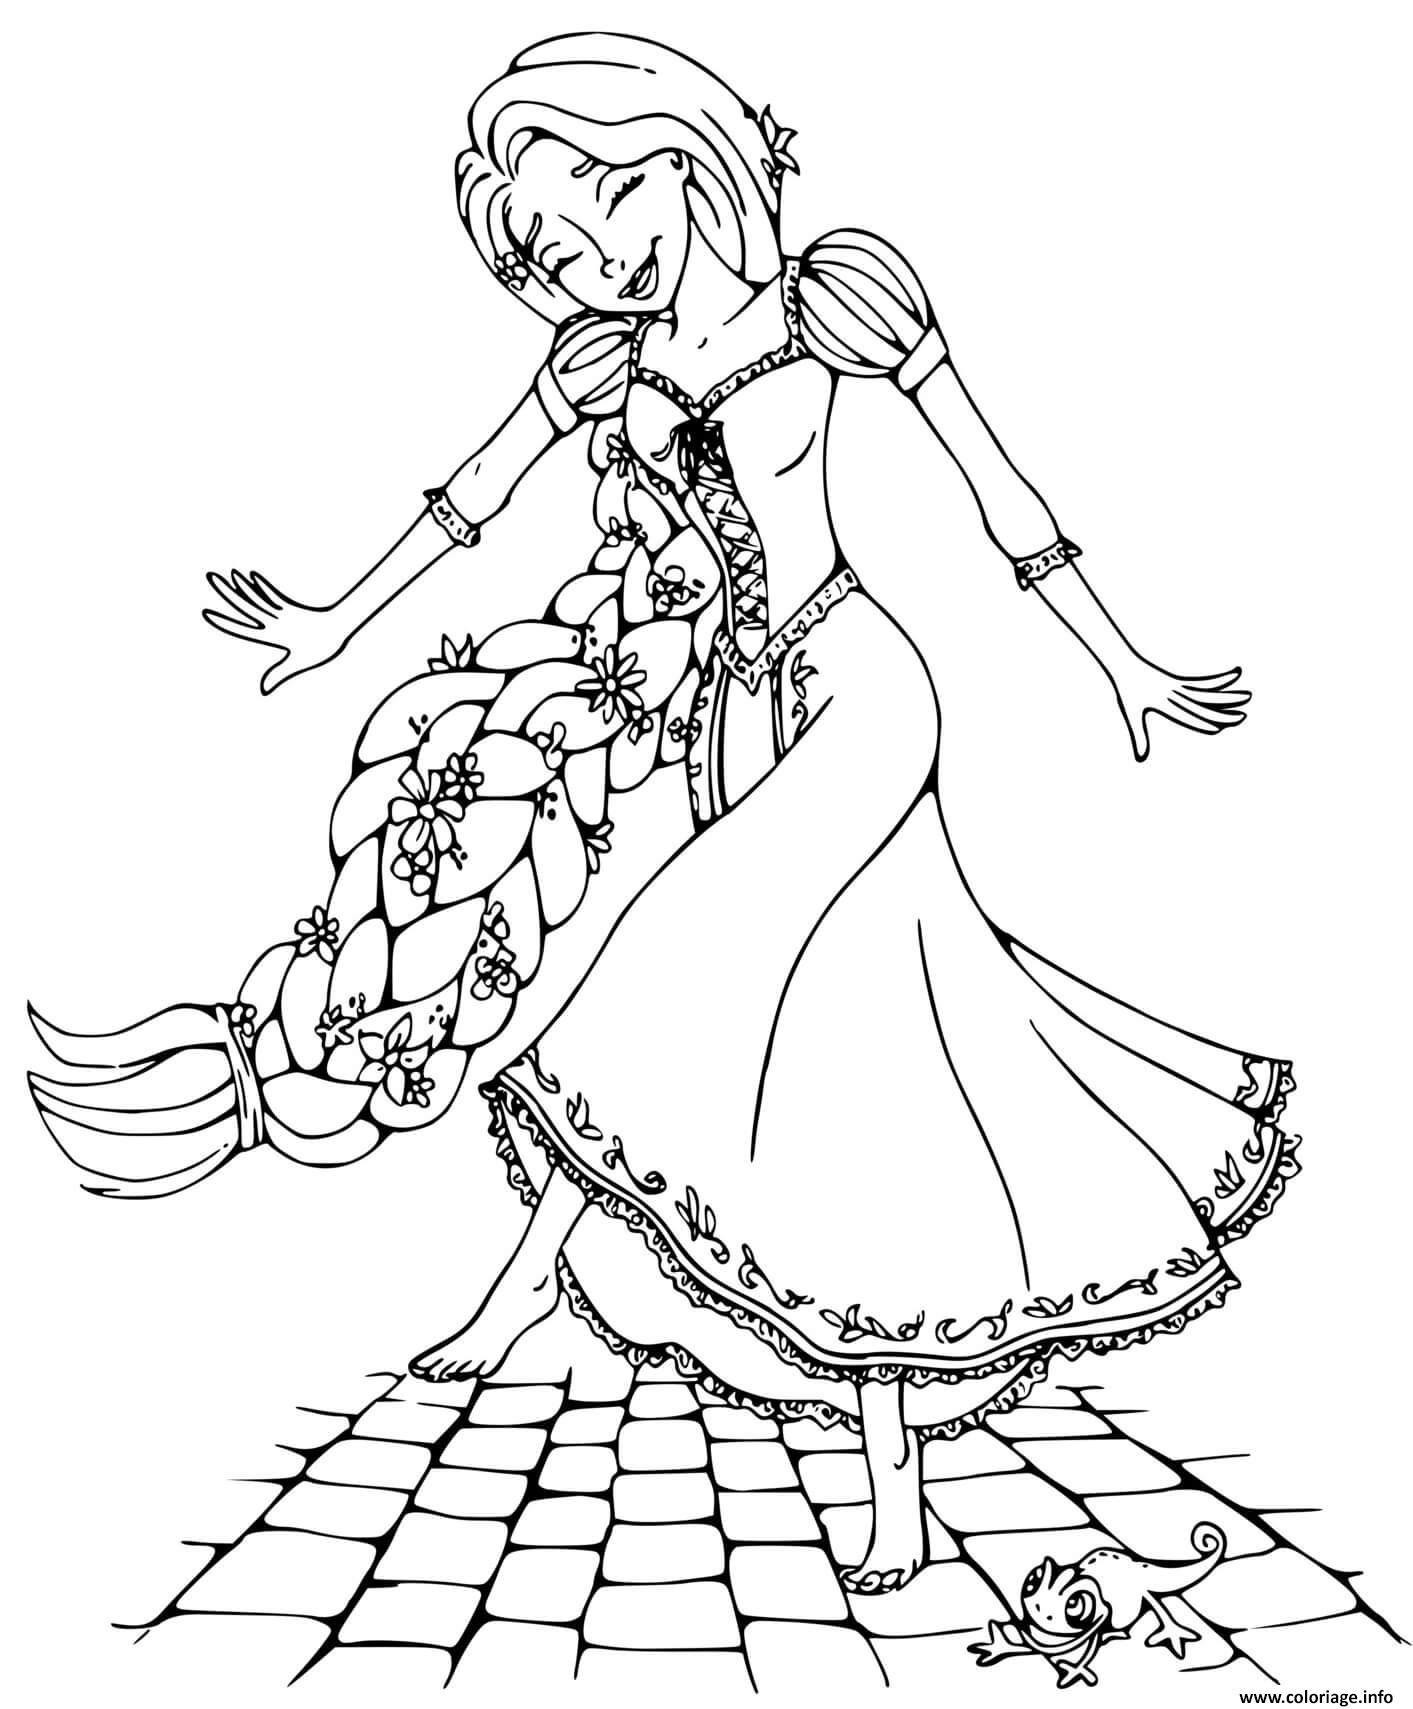 Dessin raiponce danse pied nu avec ses 70 pieds de cheveux Coloriage Gratuit à Imprimer